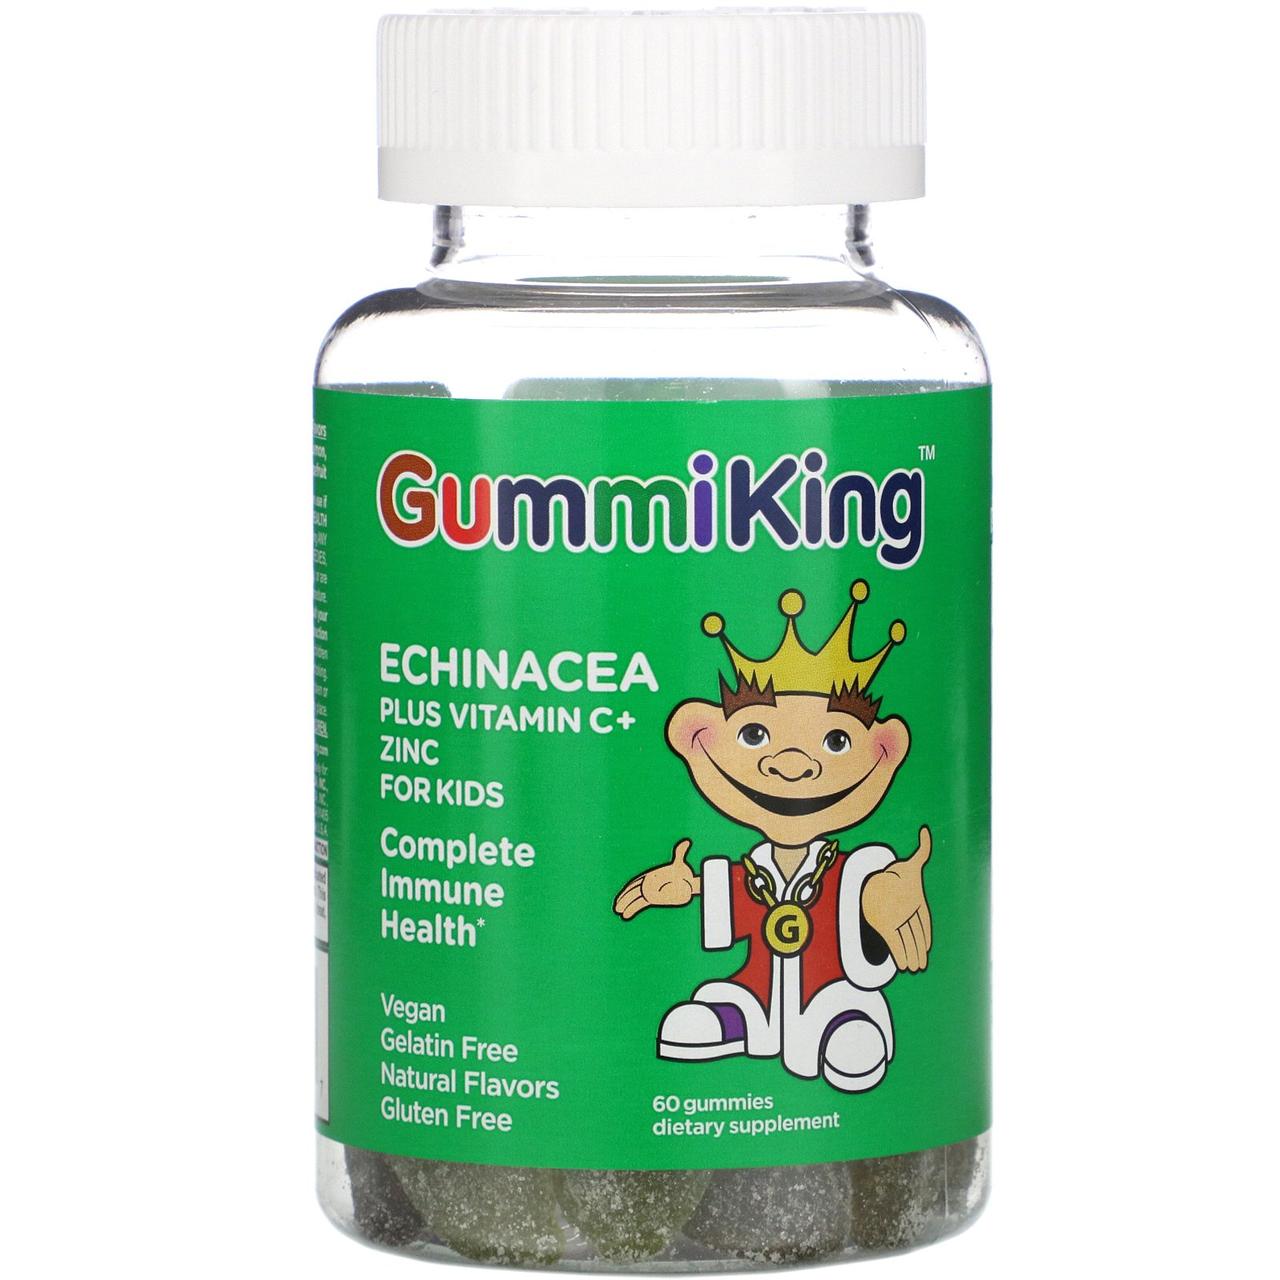 Ехінацея з вітаміном с і цинком для дітей, 60 жувальних таблеток, Gummi King